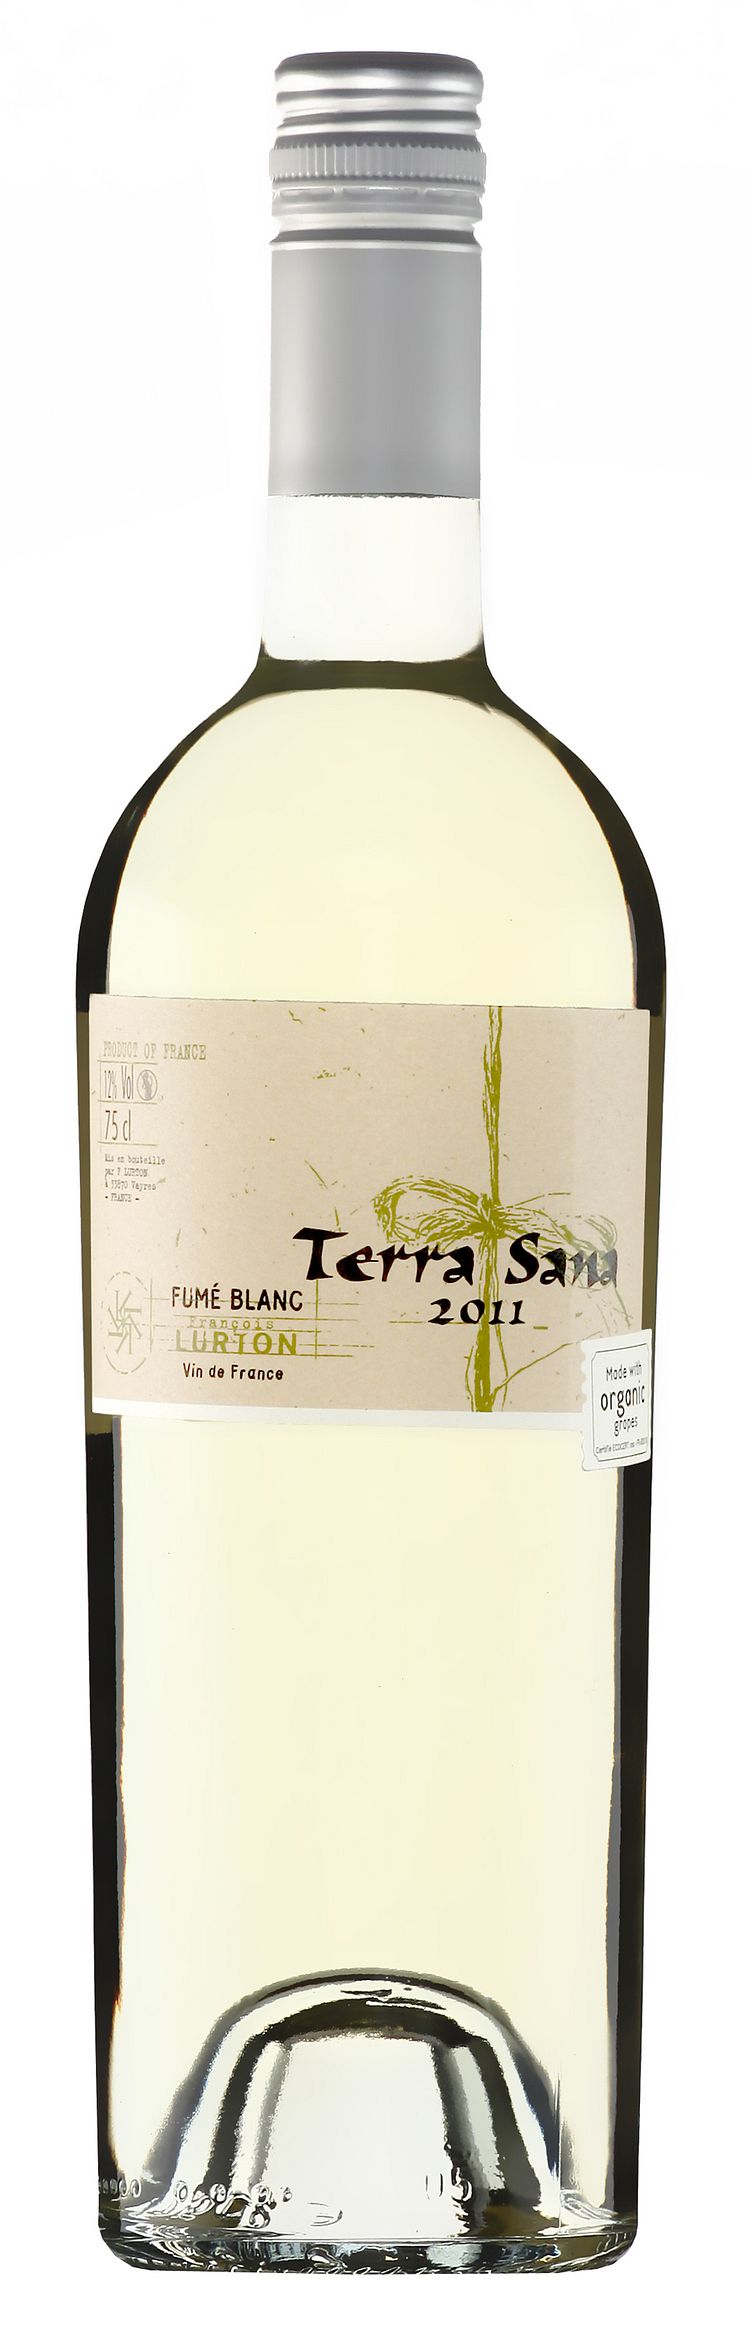 Terra Sana Fumé Blanc 2011